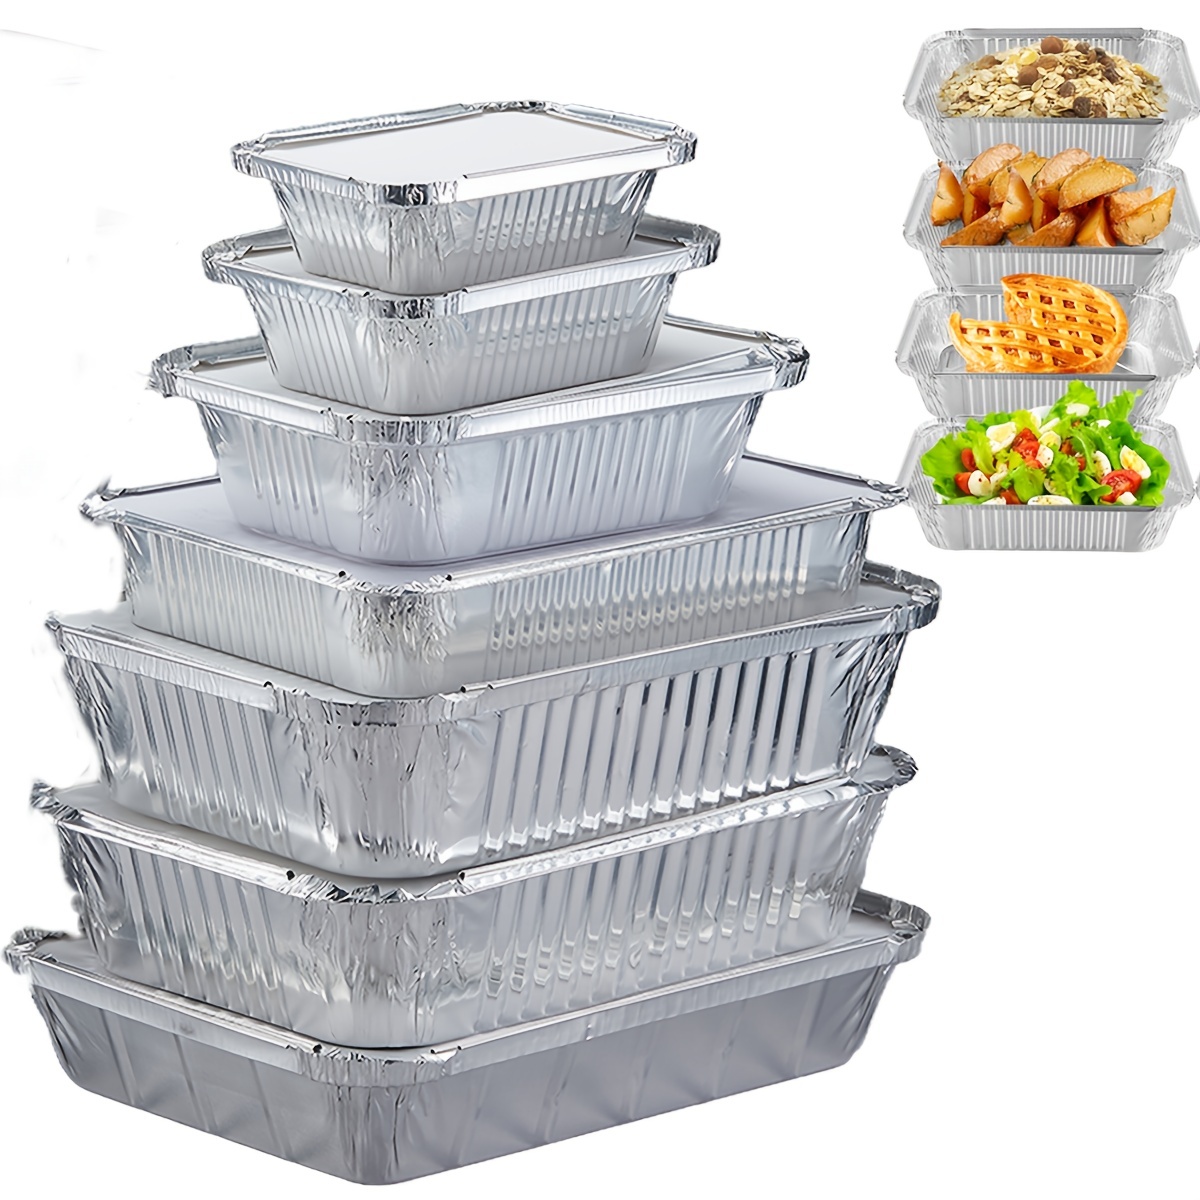 Contenitori usa e getta in alluminio con coperchi, 500 ml. Ideale per  preparare i pasti, conservare gli alimenti da asporto., Al